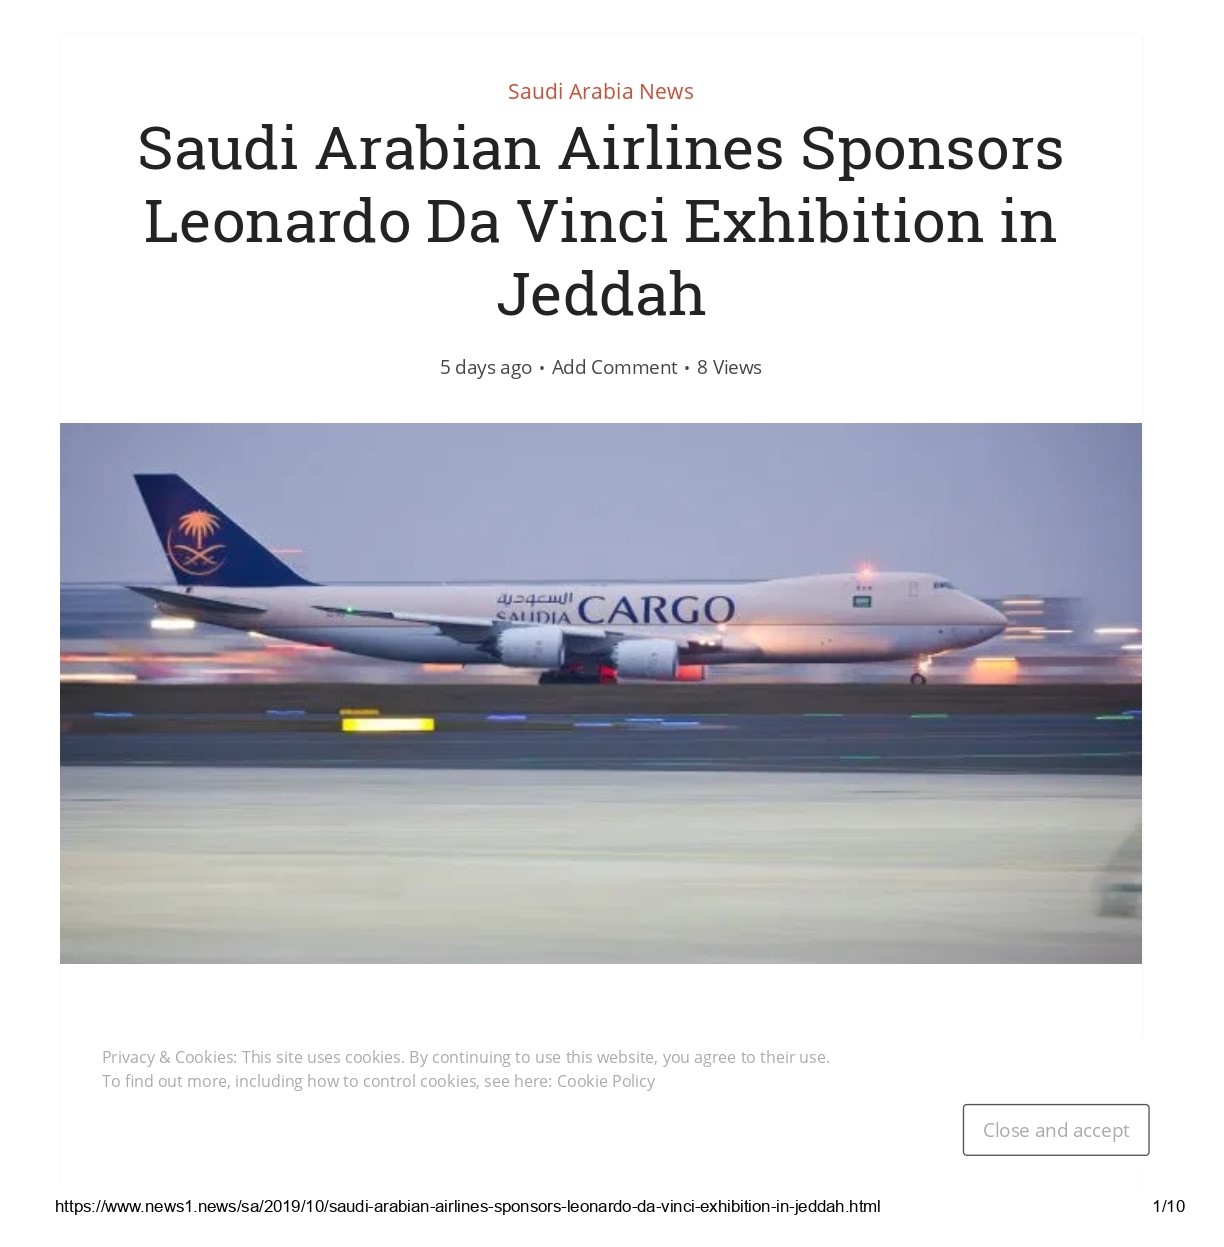 Saudi Arabian Airlines Sponsors Leonardo Da Vinci Exhibition in Jeddah